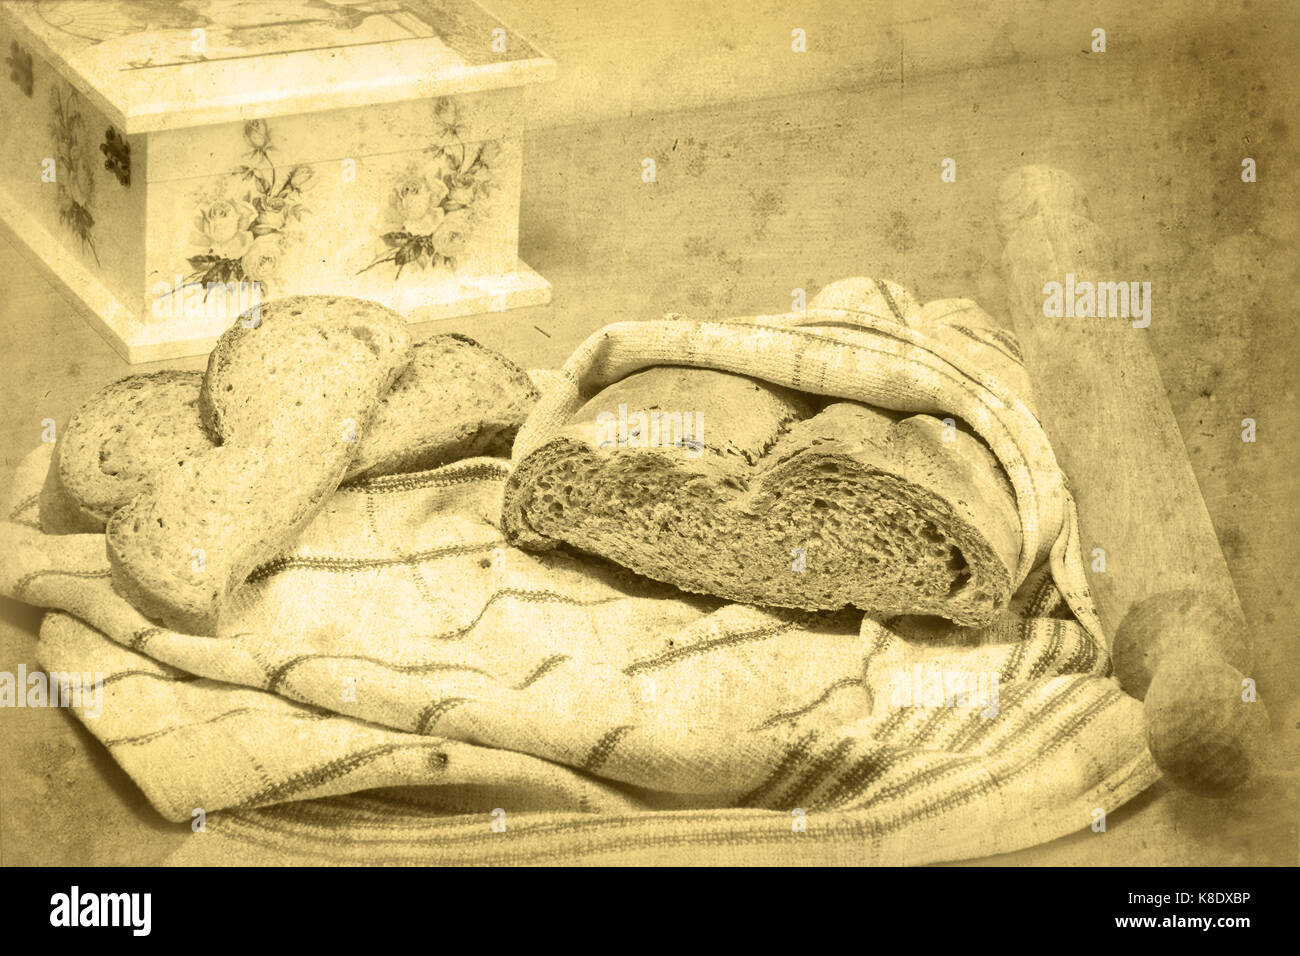 Brotlaib eingewickelt in ein Handtuch für die Küche, Rolling Pin, und zwei Scheiben Brot liegen auf dem Tuch. Decoupage Box ist teilweise sichtbar. Selektive konzentrieren. Stockfoto